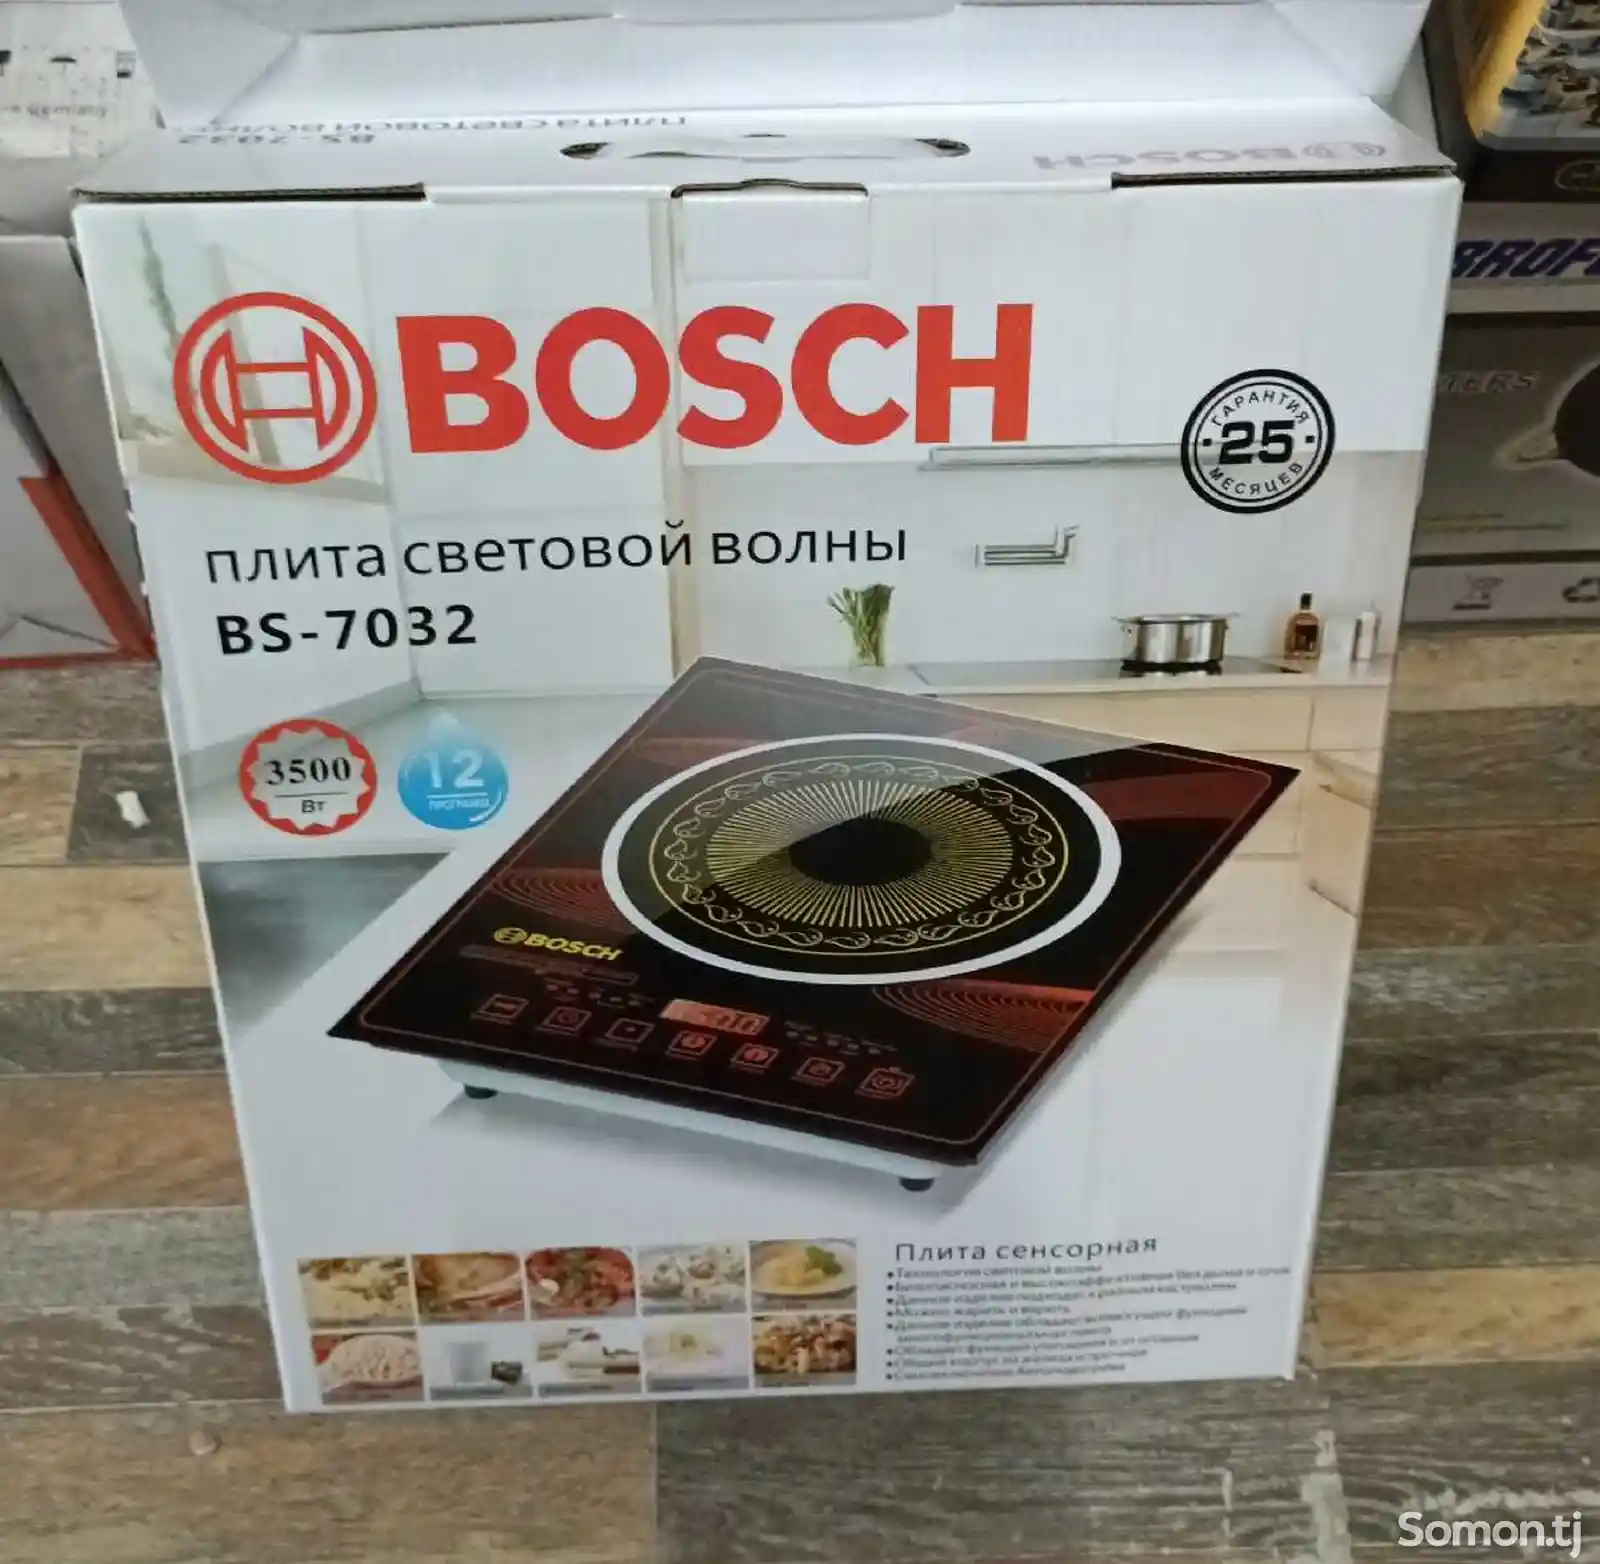 Плита Bosch bs-7032